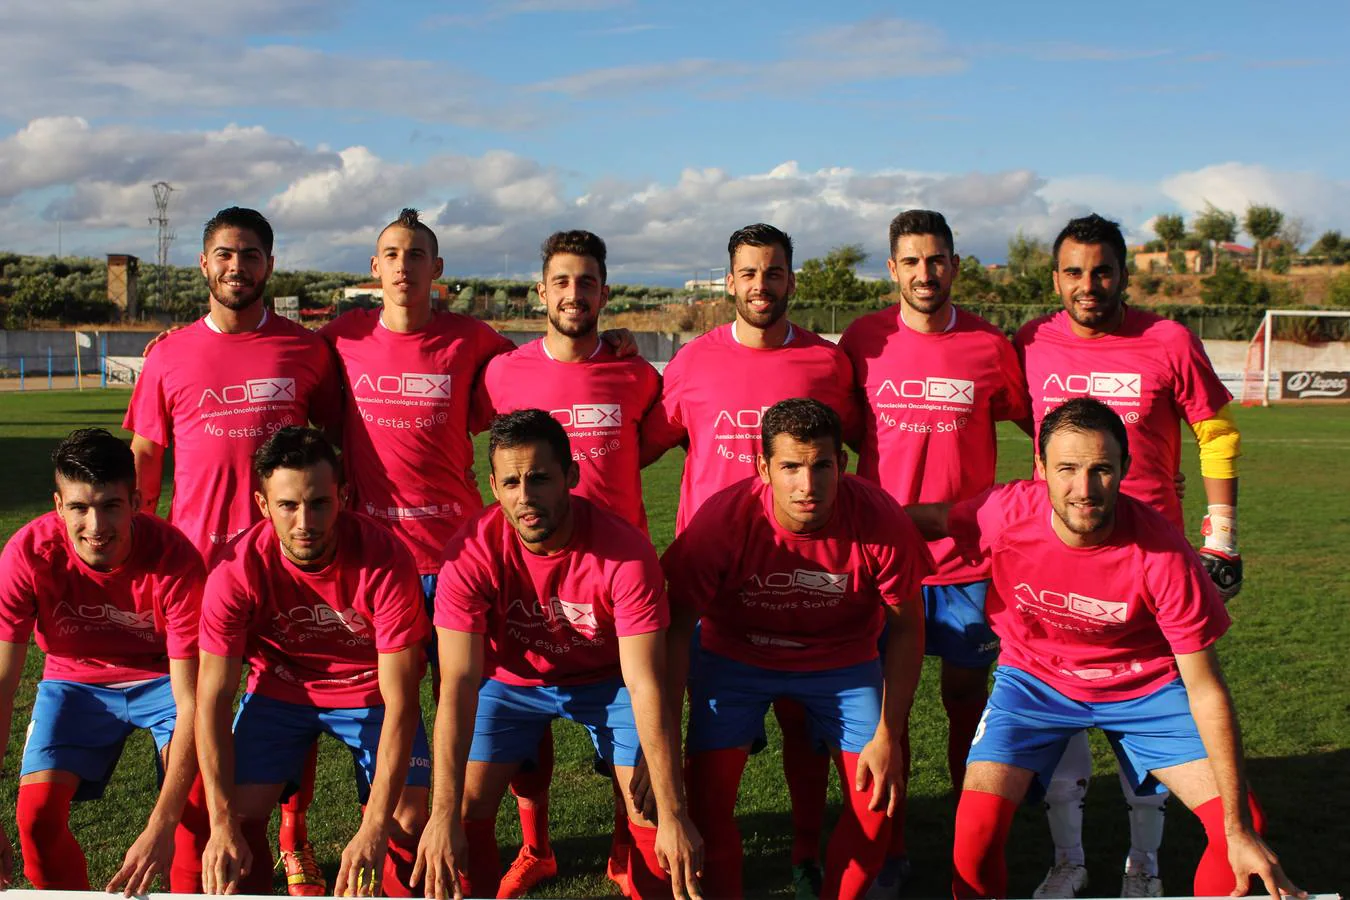 El Guareña vistió en rosa para la foto en solidaridad y apoyo con AOEX (asociación oncológica extremeña), y goleó 3-0 al vecino Don Álvaro.